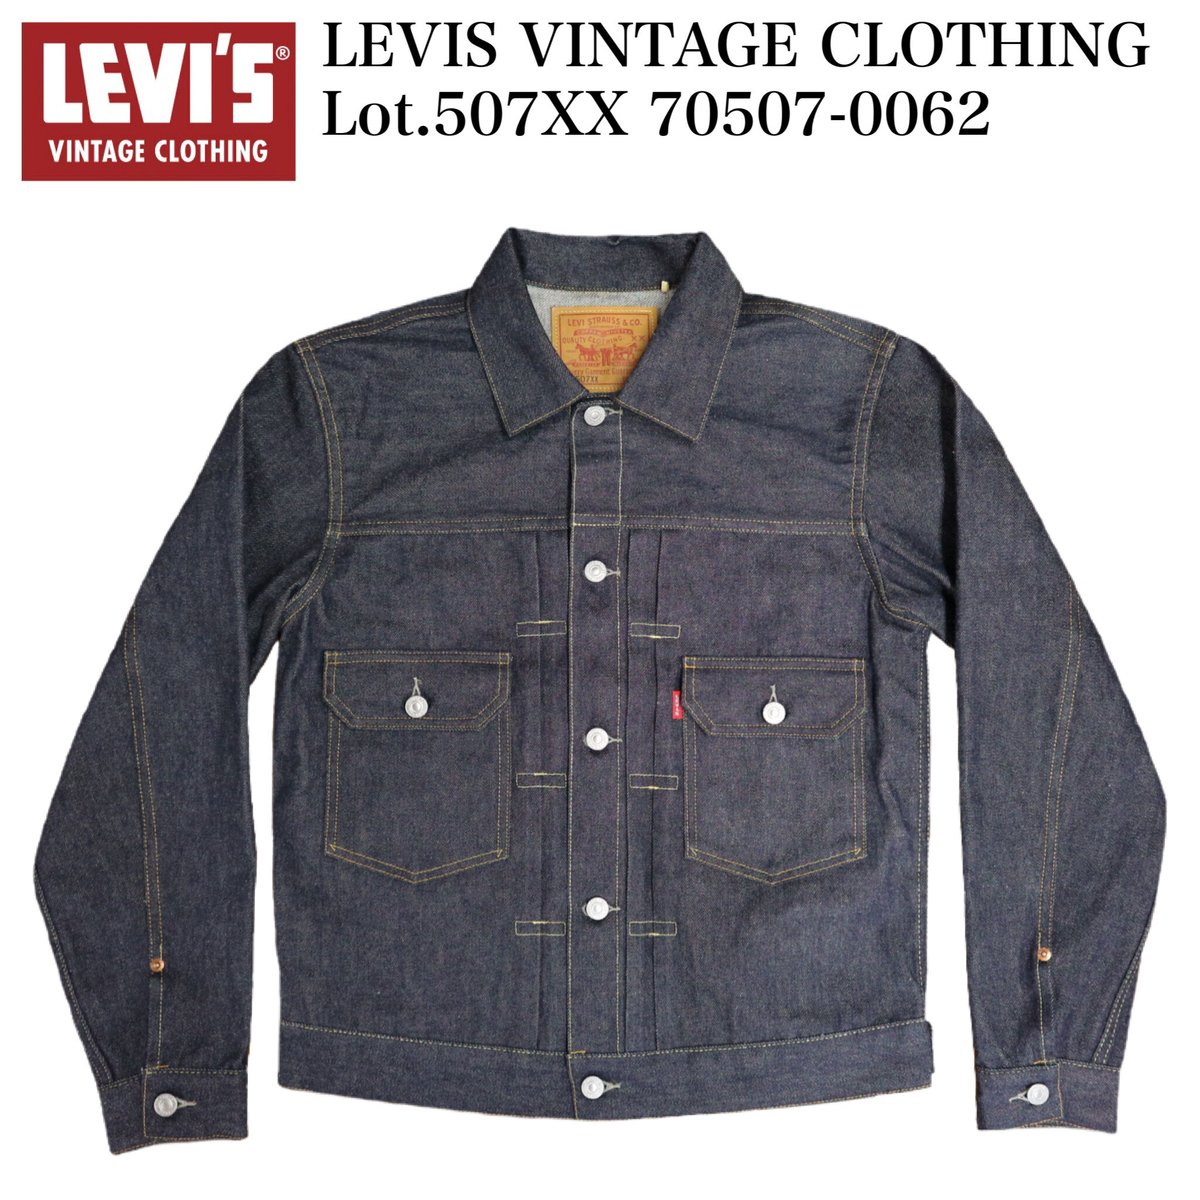 LEVIS VINTAGE CLOTHING Lot.507XX 70507-0062 | c...